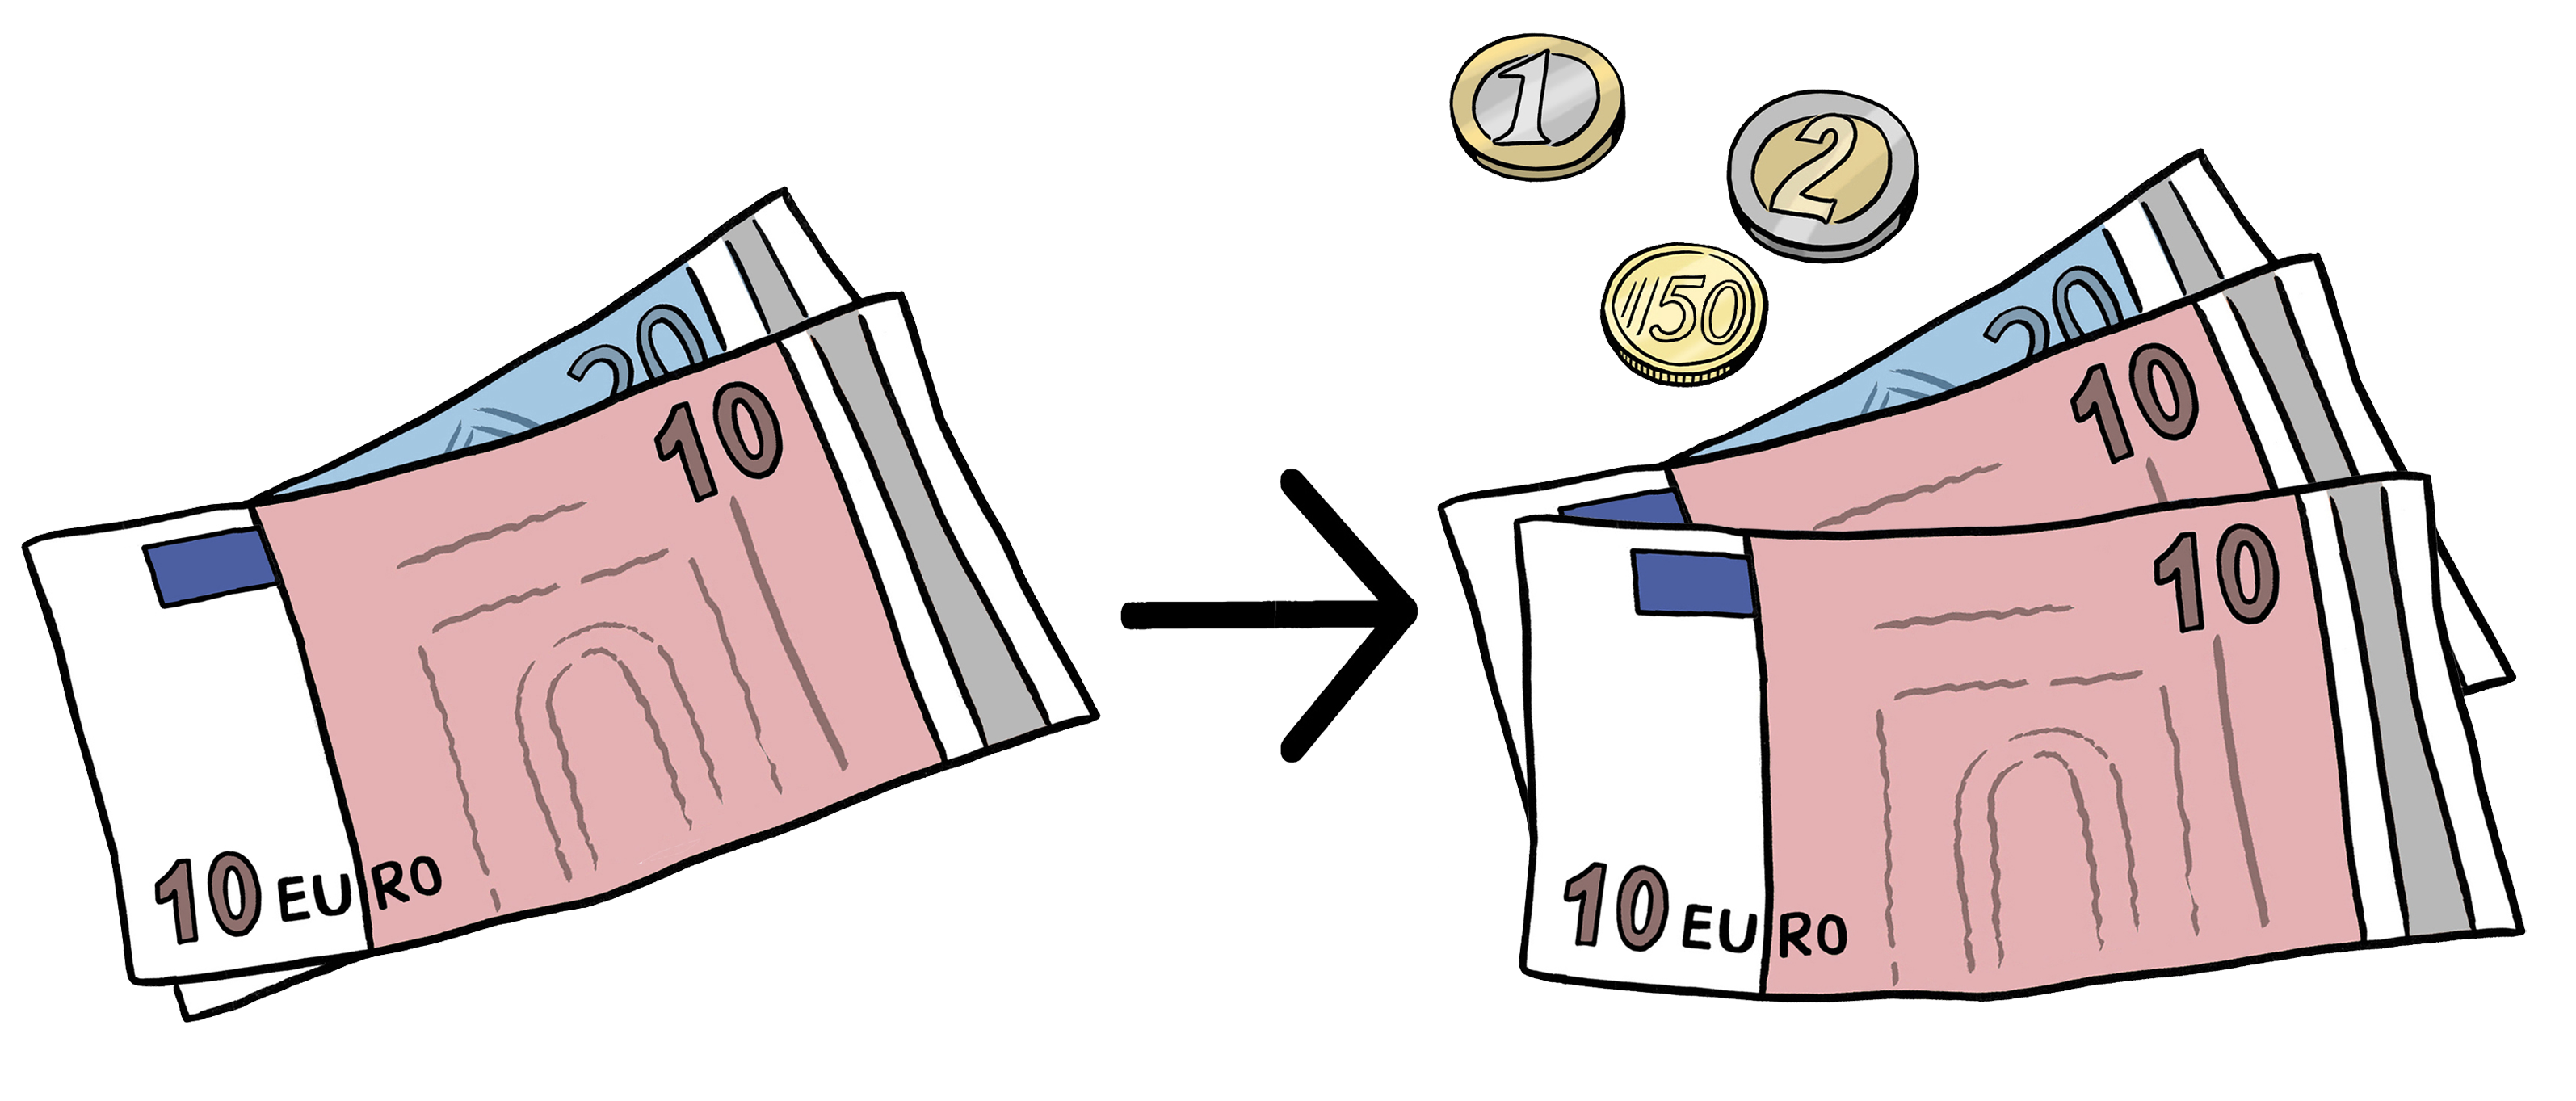 Leichte Sprache Bild: links 30 Euro, ein Pfeil nach rechts, rechts 43,50 Euro